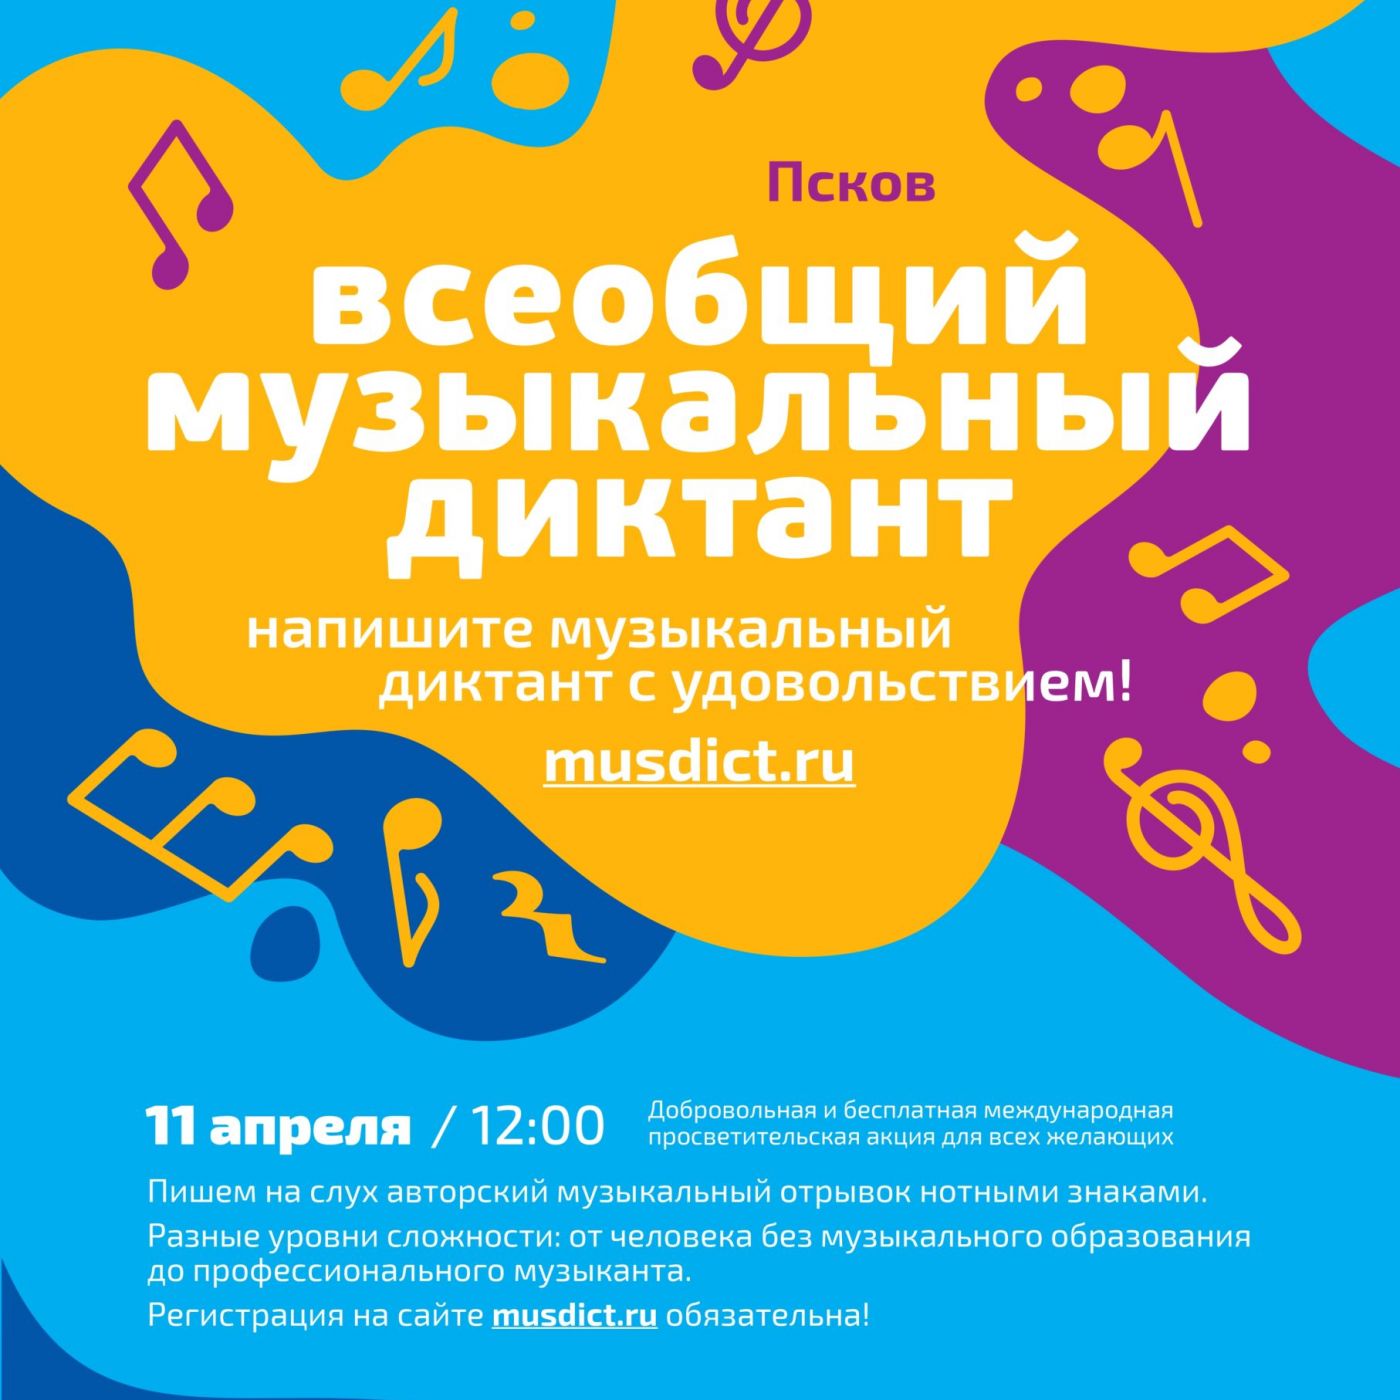 Акция «Всеобщий музыкальный диктант» прошла в Пскове